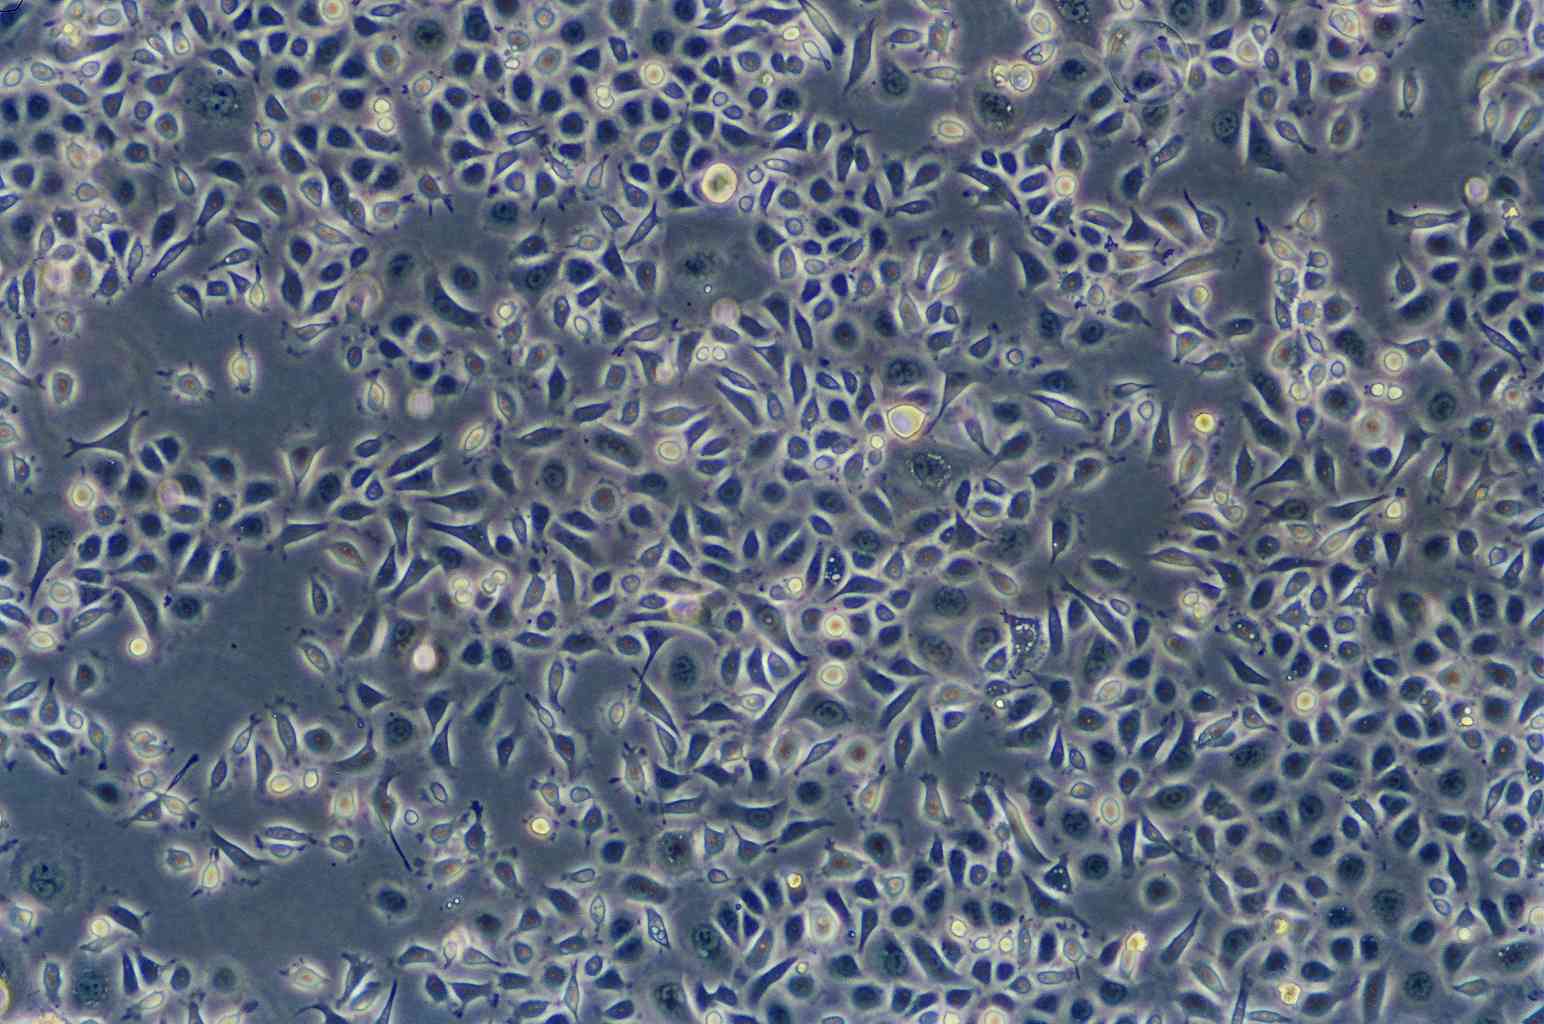 KYSE-150 epithelioid cells人食管鳞癌细胞系,KYSE-150 epithelioid cells